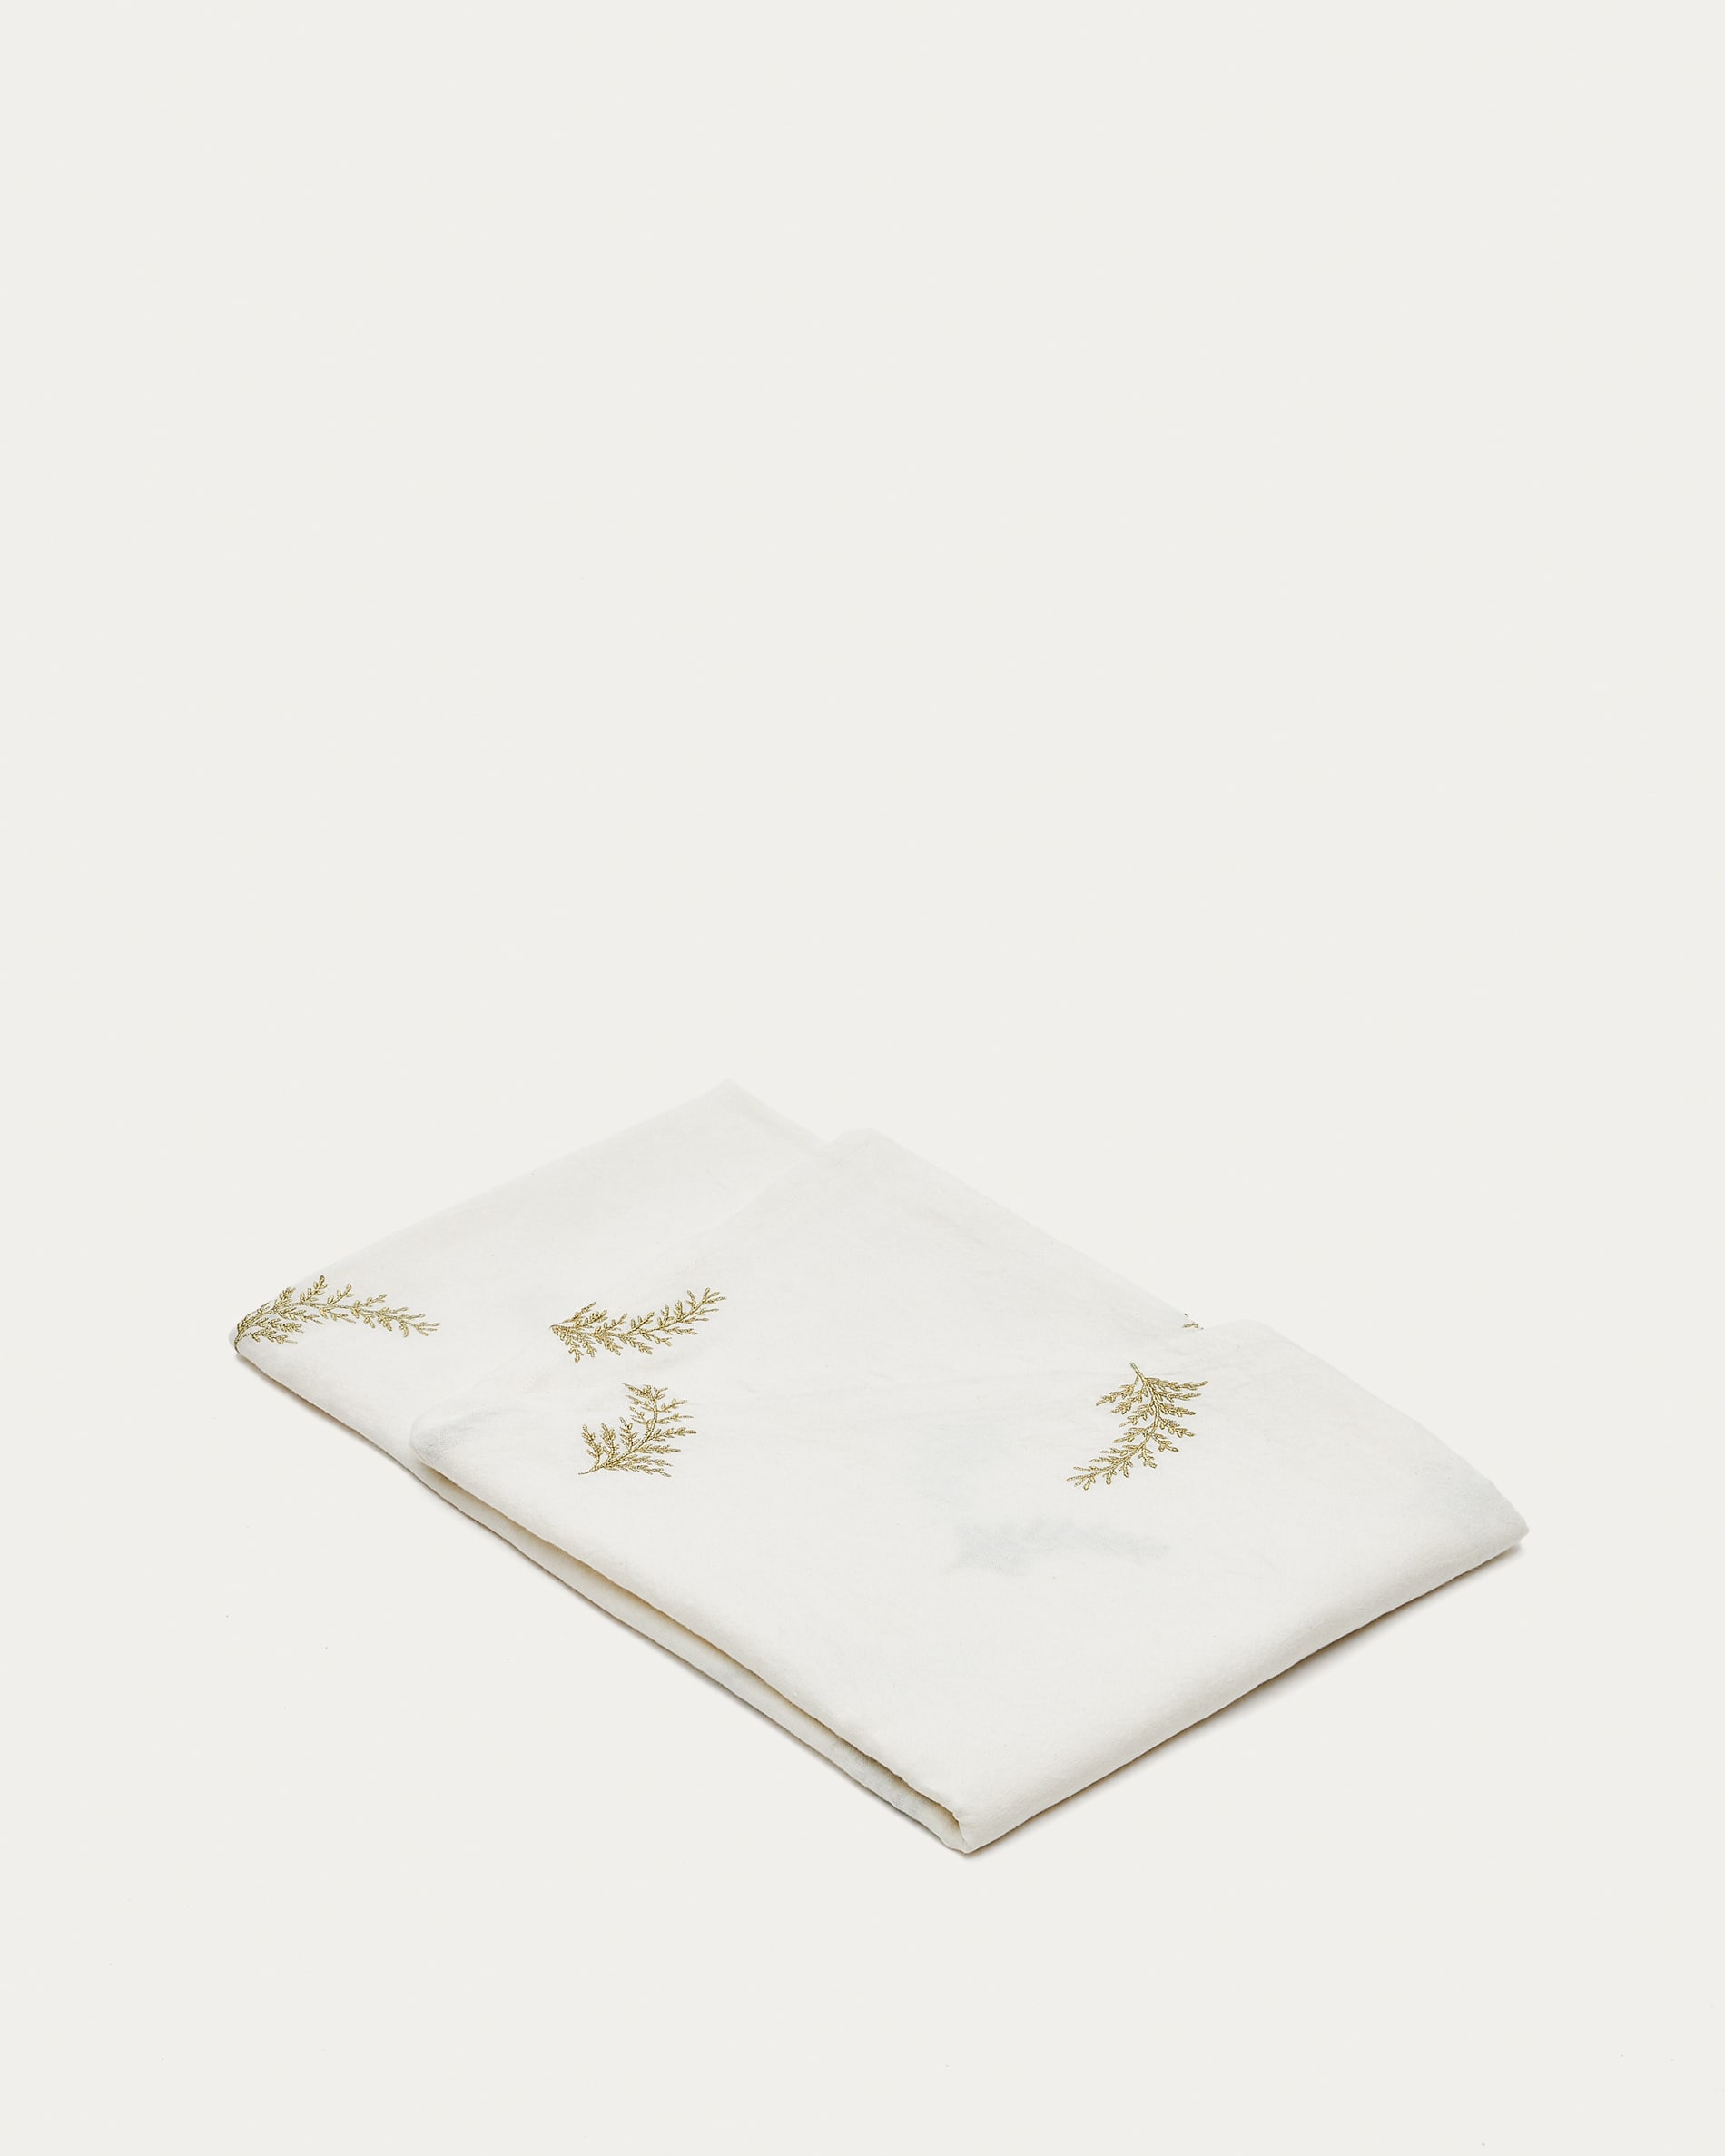 Tovaglia rotonda Masha cotone e lino bianco particolare foglie ricam lurex  dorato Ø150cm